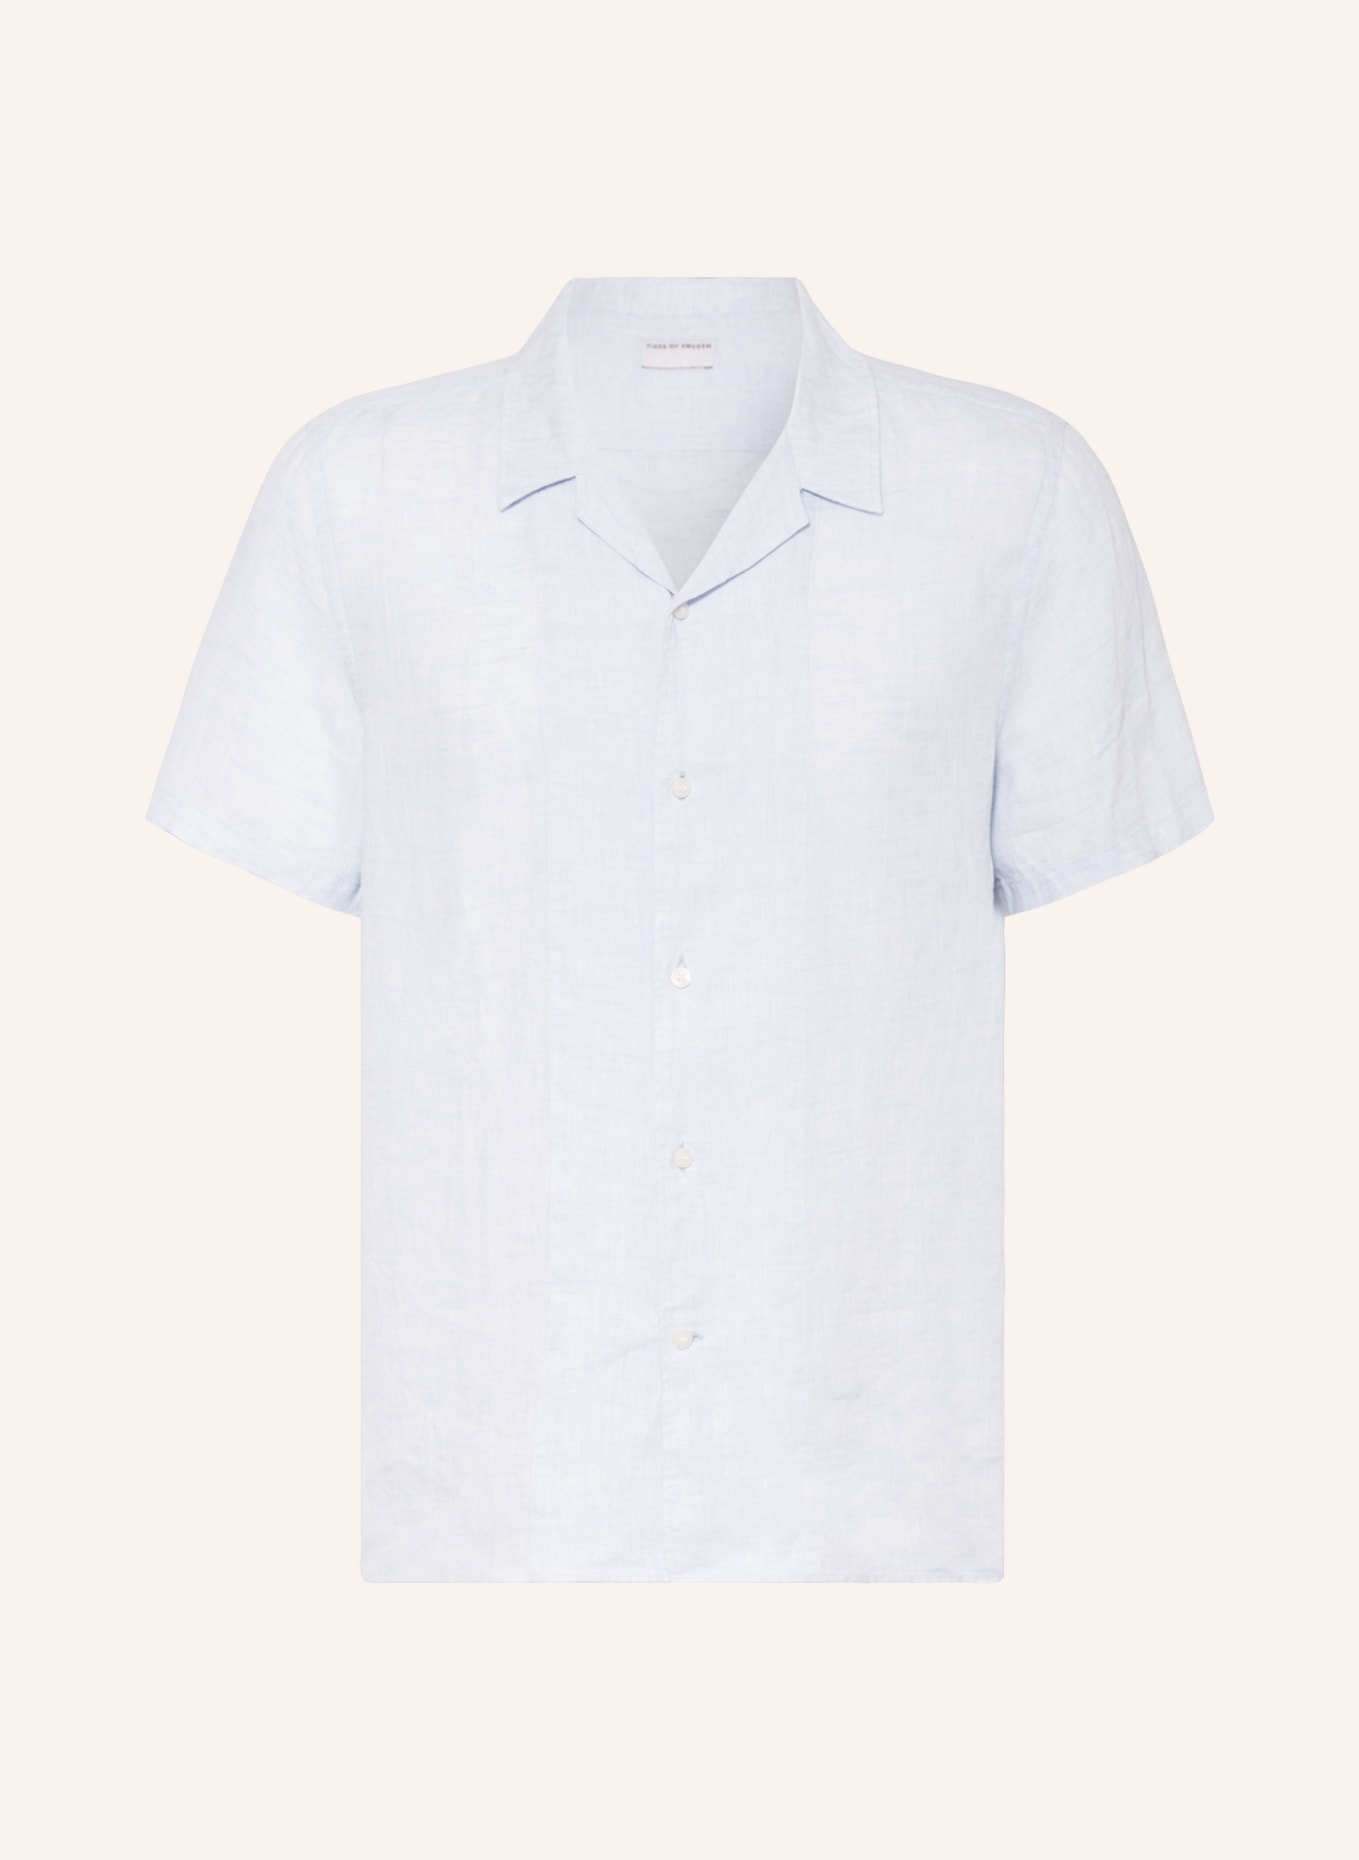 TIGER OF SWEDEN Resort shirt RICCERDO comfort fit, Color: LIGHT BLUE (Image 1)